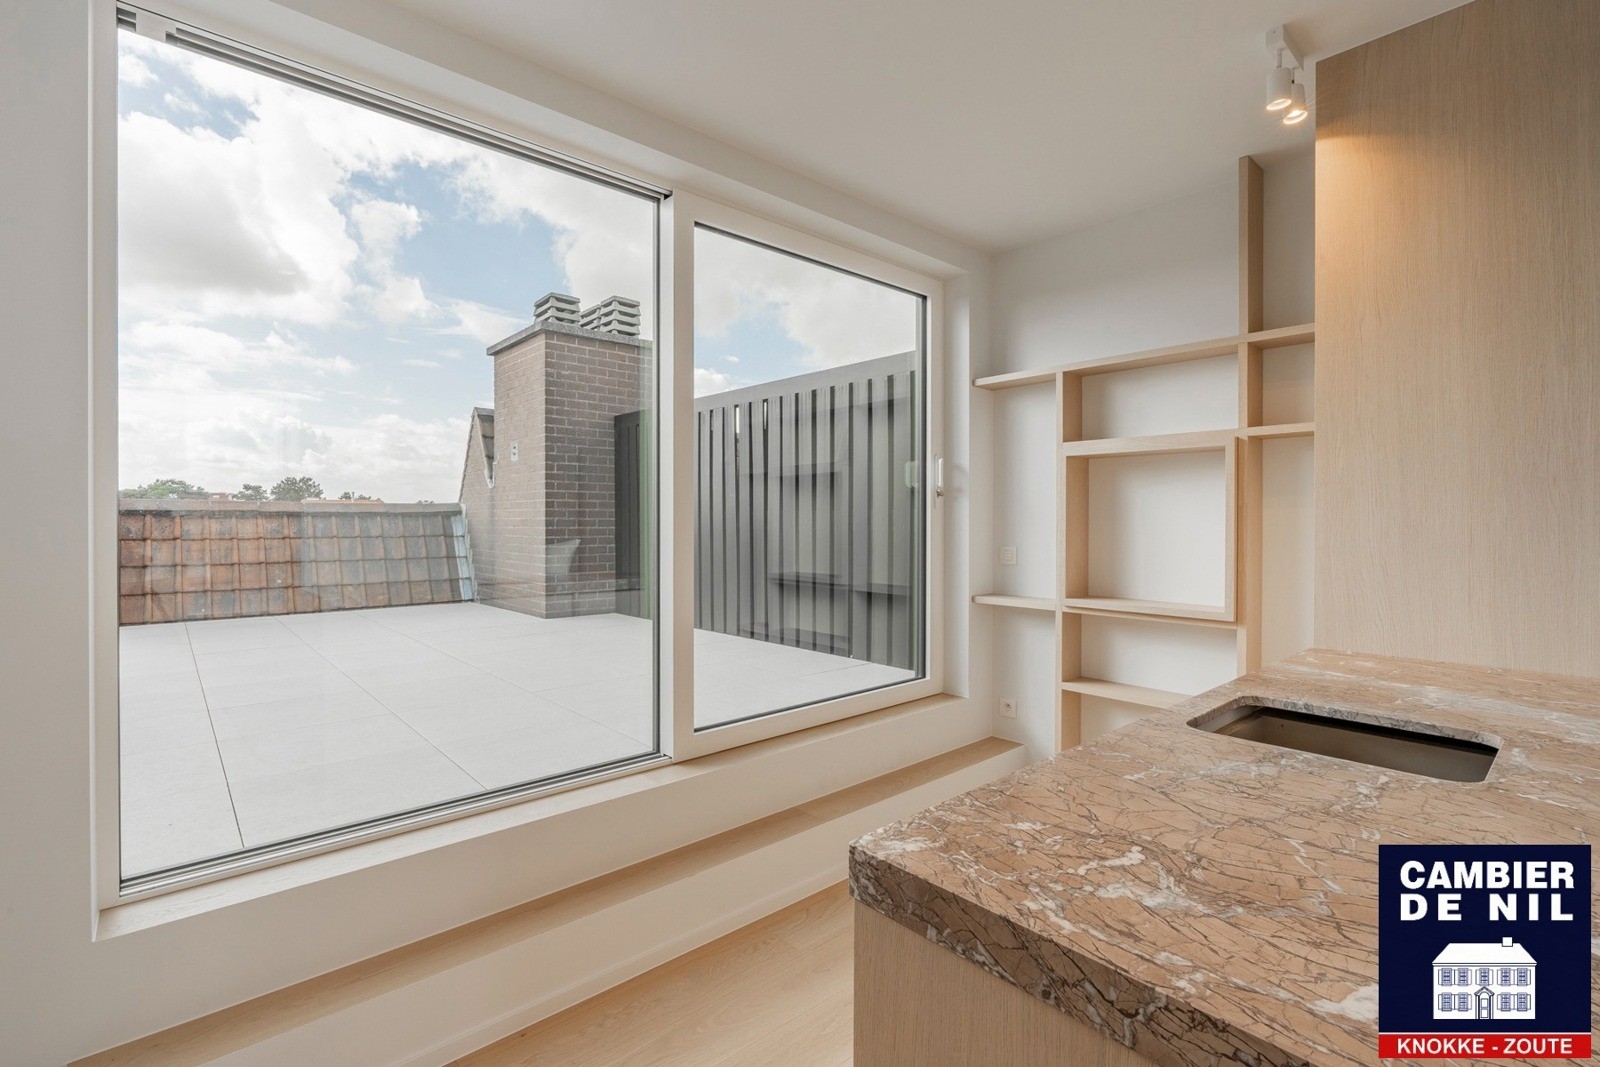 Vernieuwd appartement met open zichten en uitzonderlijke terrassen 25